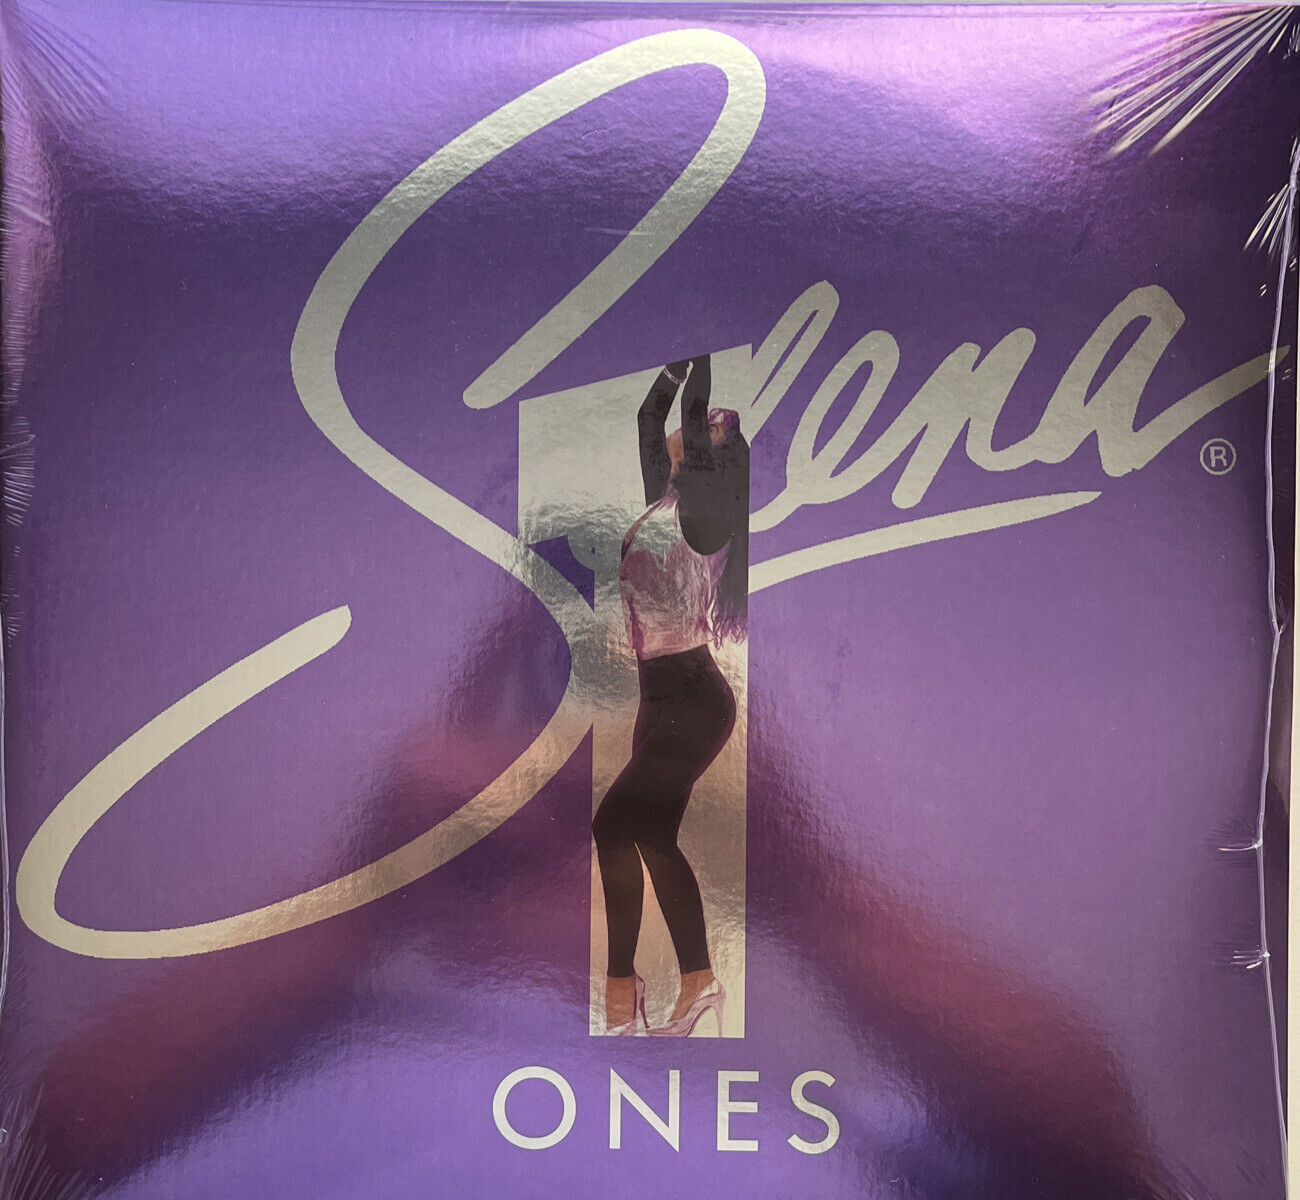 Selena “Ones” Tejano Tex Mex Latin Pop Record Lp